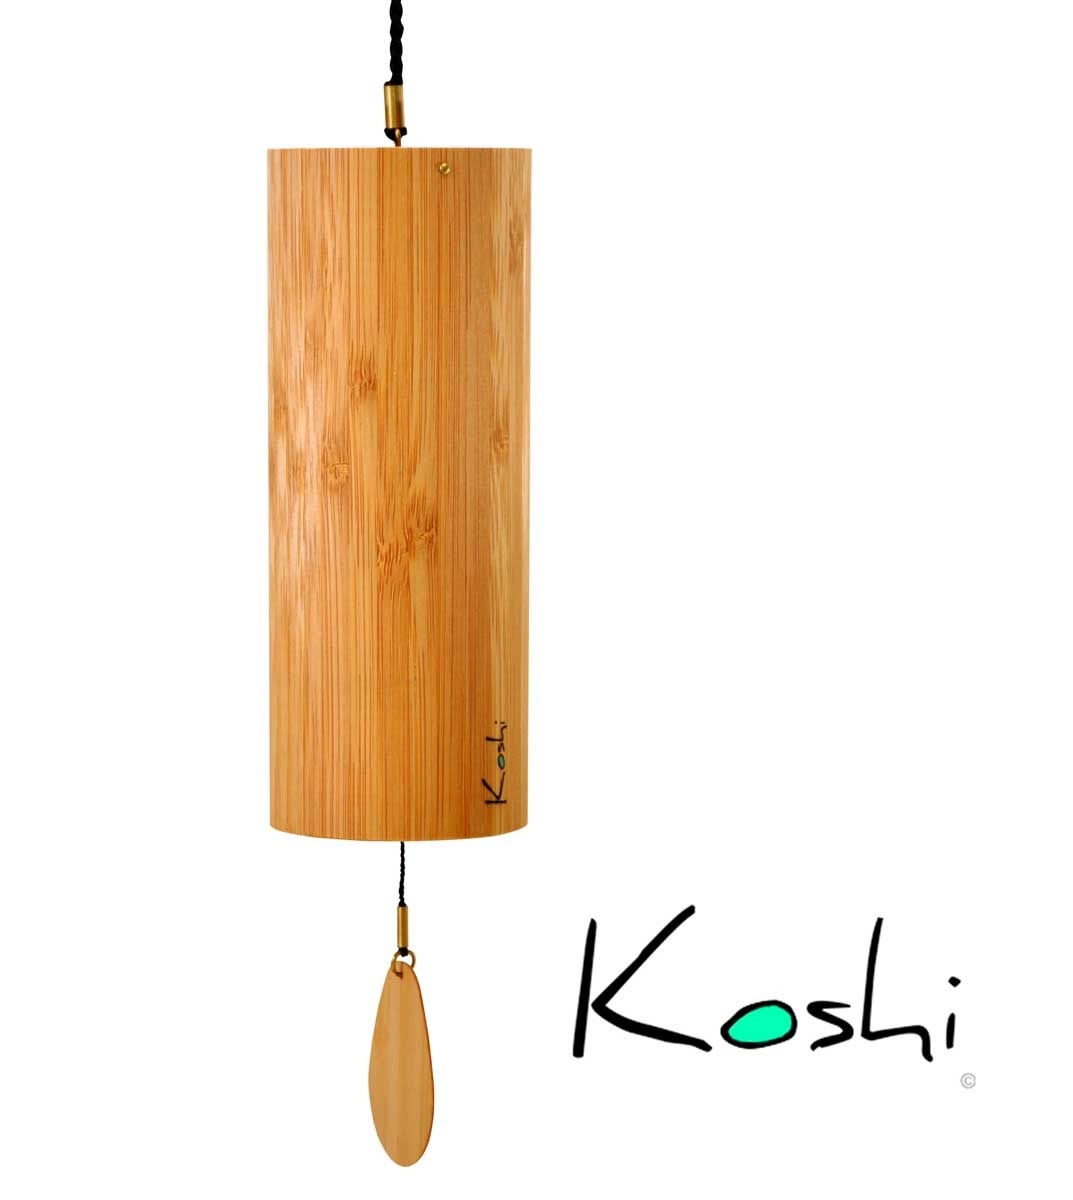 Koshi Chime Ignis 6,3 cm diam, 16,5 cm G B D G B D G A